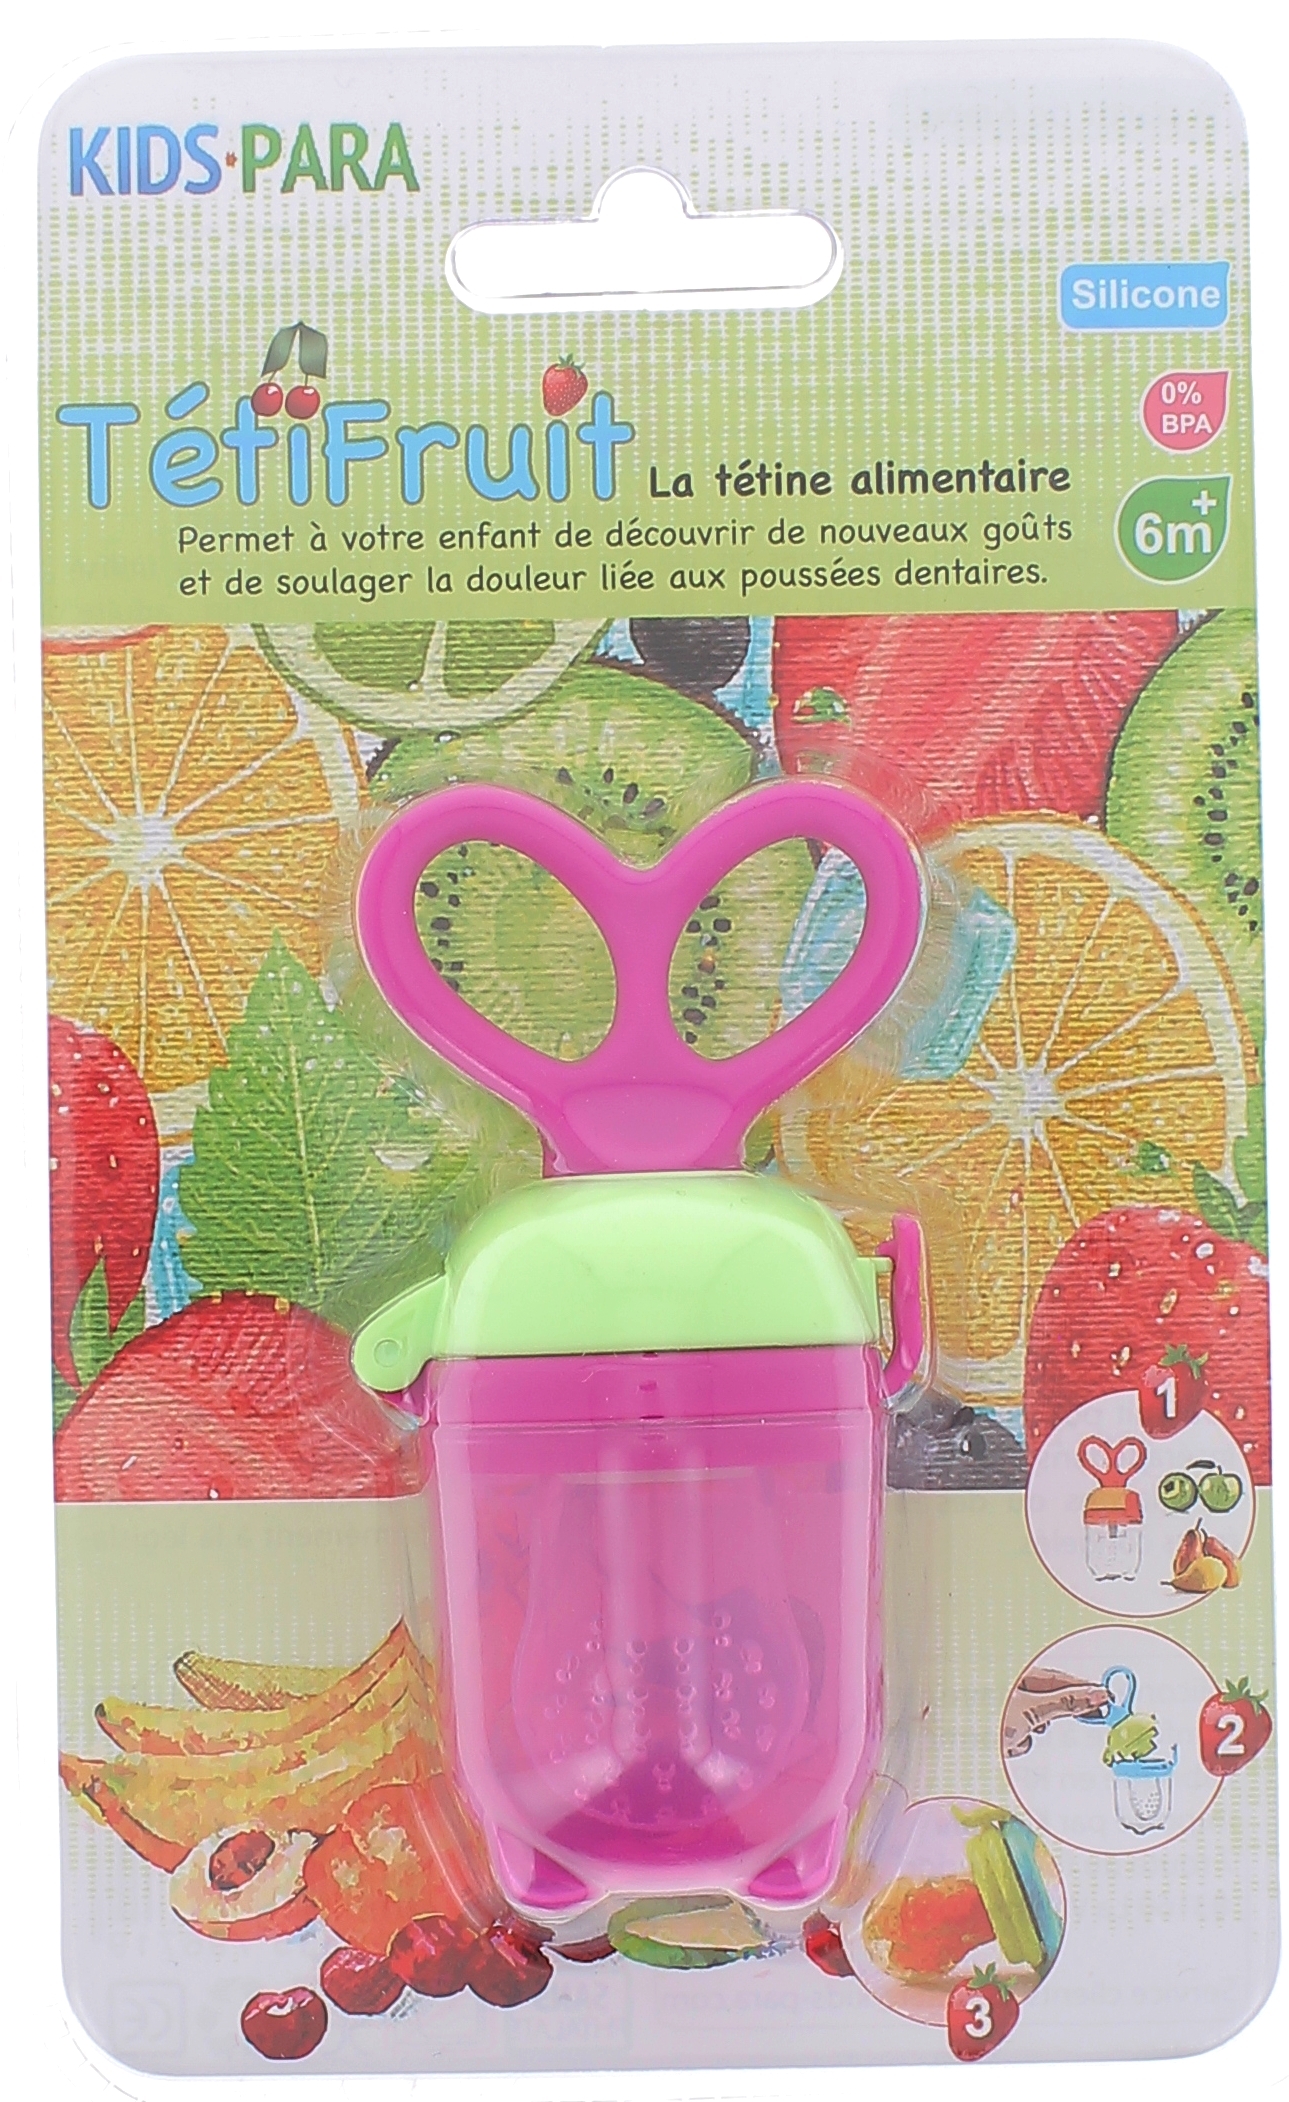 TétiFruit Tétine Alimentaire Kids Para - 1 tétine de couleur rose